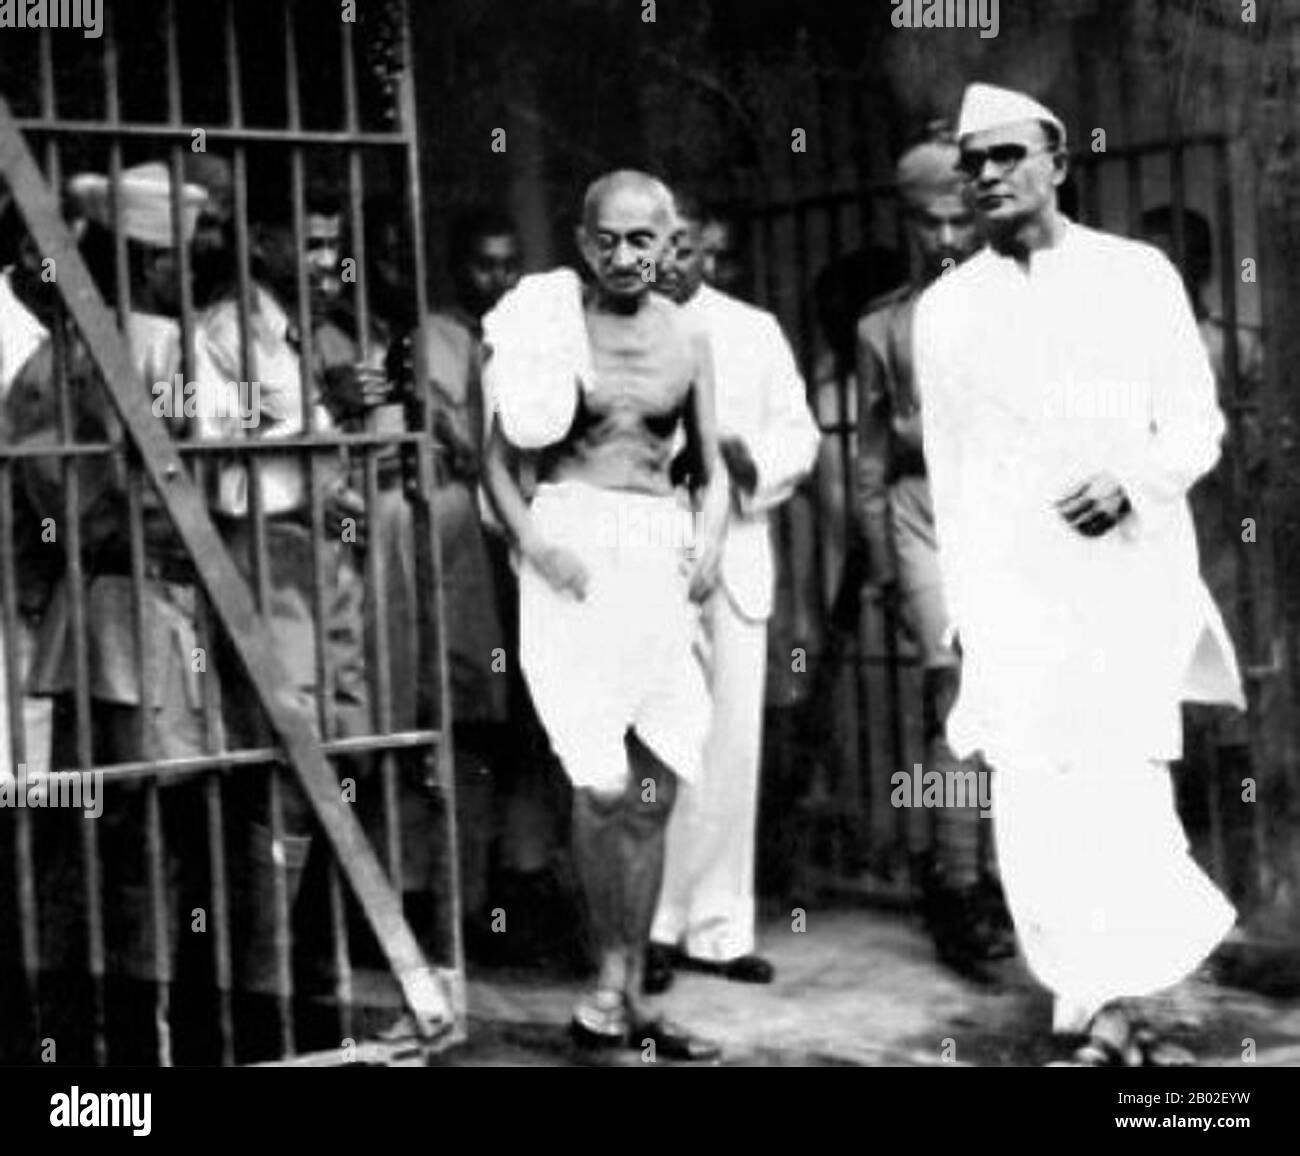 Mohandas Karamchand Gandhi (2 de octubre de 1869 – 30 de enero de 1948) fue el líder político e ideológico preeminente de la India durante el movimiento de independencia de la India. Fue pionero en satyagraha. Esto se define como la resistencia a la tiranía a través de la desobediencia civil masiva, una filosofía firmemente fundada en ahimsa, o la no violencia total. Este concepto ayudó a la India a ganar independencia e inspiró movimientos por los derechos civiles y la libertad en todo el mundo. Gandhi es a menudo referido como Mahatma Gandhi o 'Gran Alma', un honorífico primero aplicado a él por Rabindranath Tagore. En la India también se le llama Bapu (Guj Foto de stock